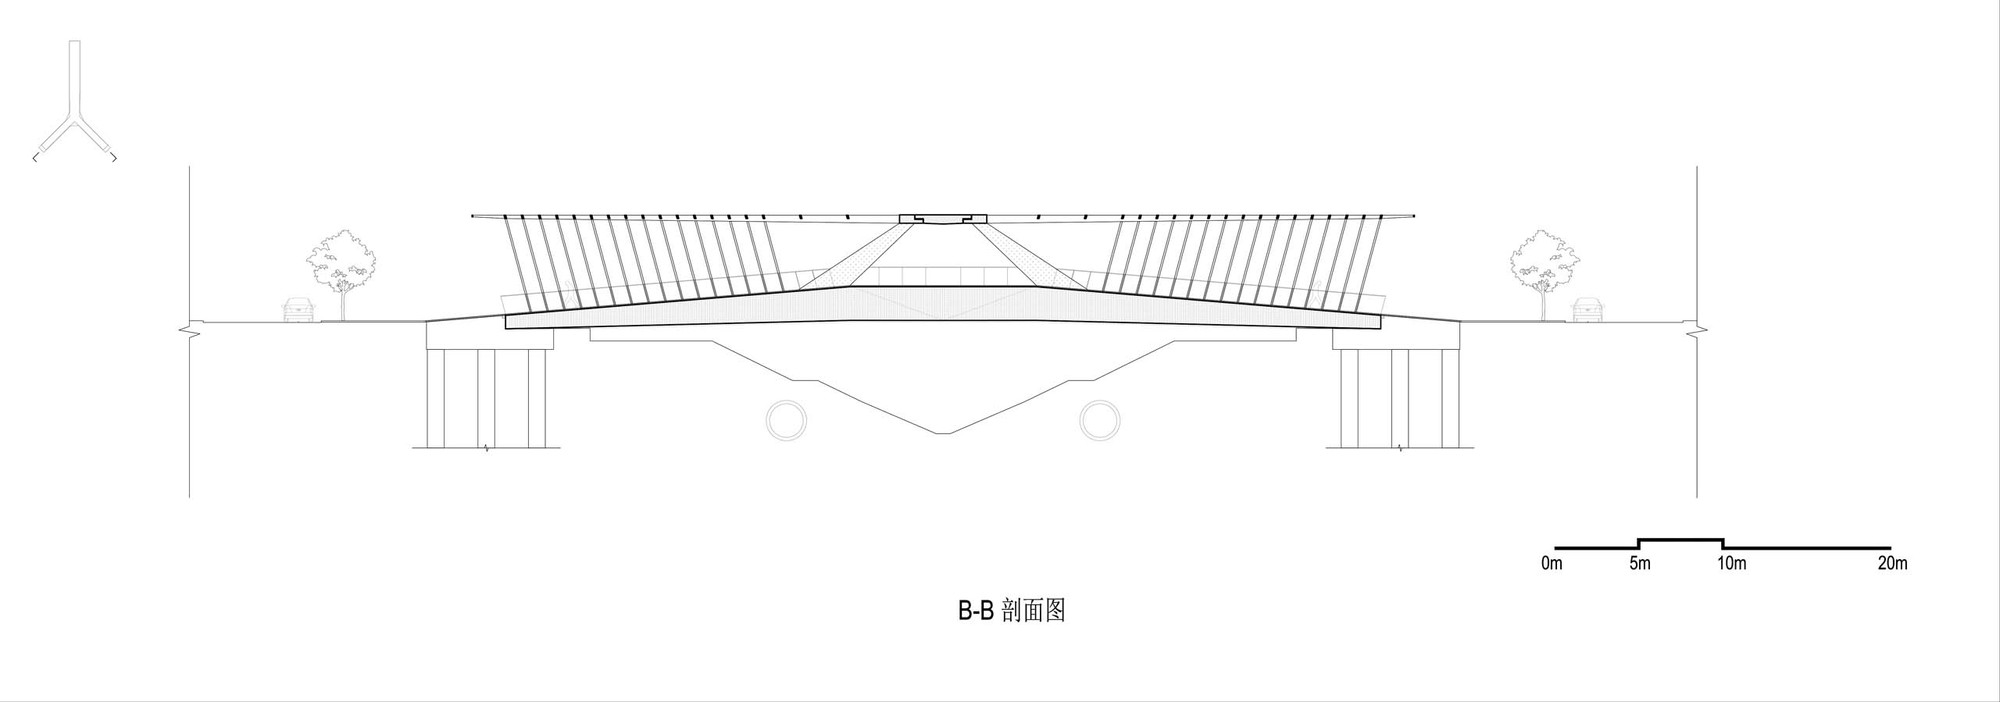 30_人行桥图纸-B-B转折剖面图.jpg